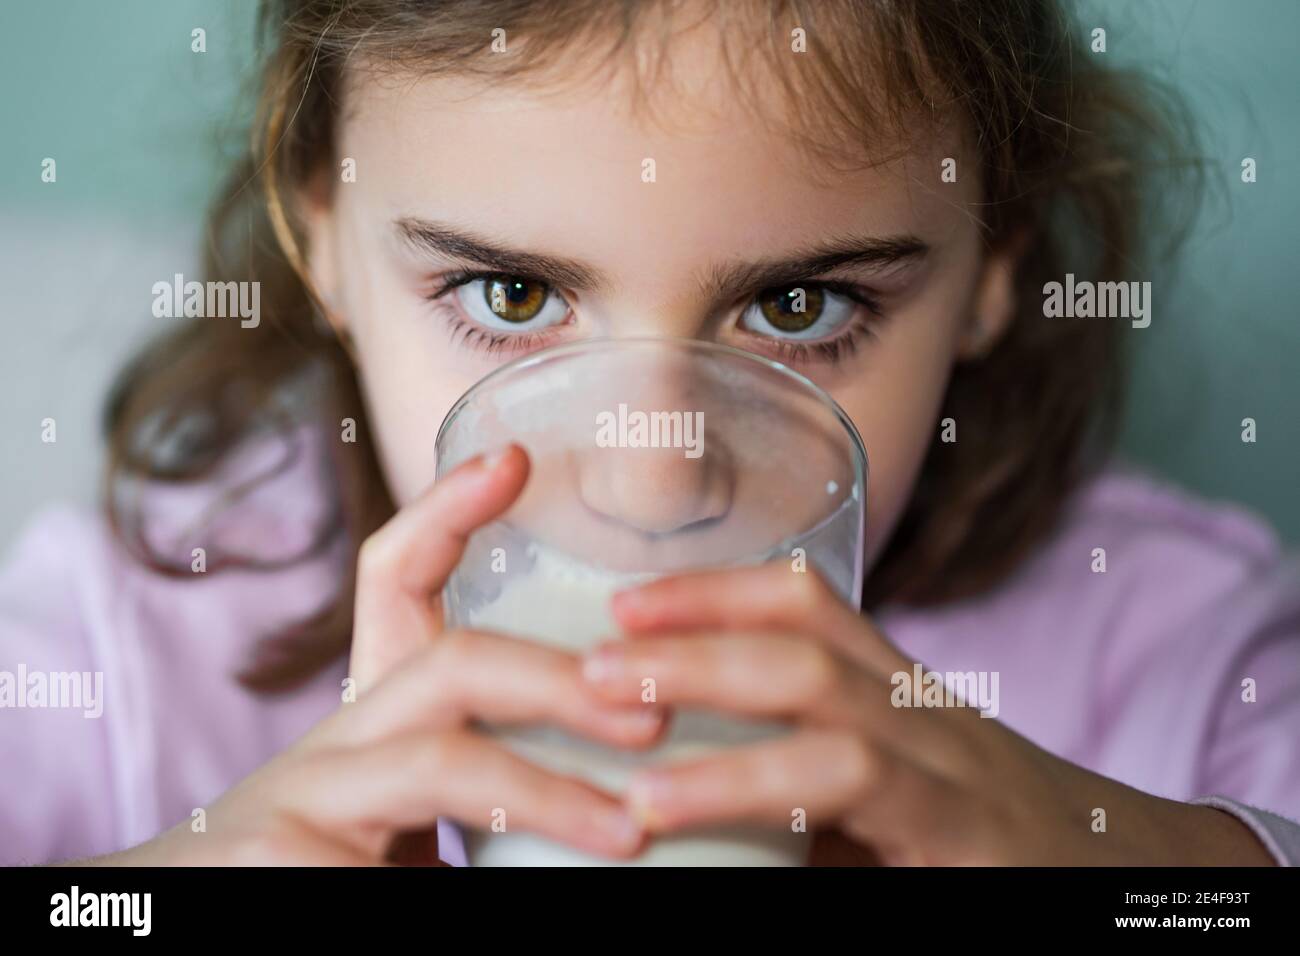 Mädchen trinkt Milch in einem Glas, in der Nähe der horizontalen Ebene.Selektive Fokus. Stockfoto